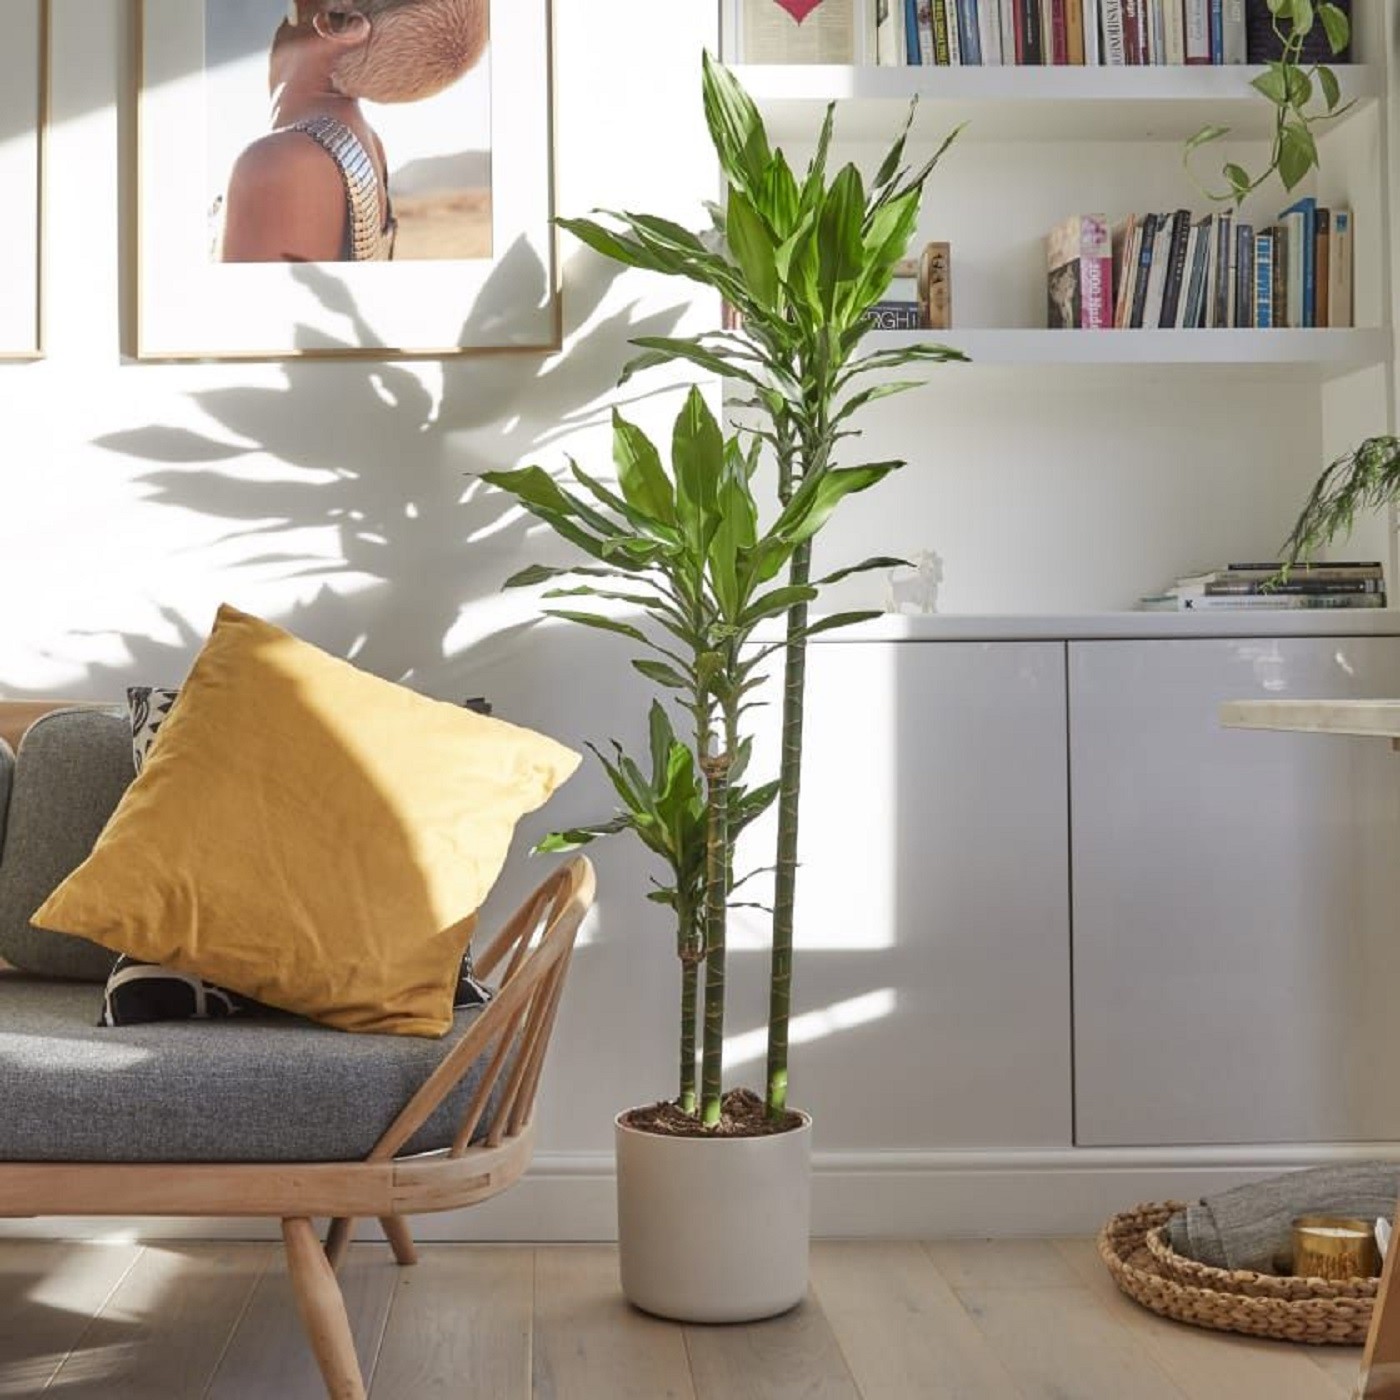 Perfeita para iniciantes: conheça a dracena, planta fácil de cuidar (Foto: Reprodução/Pinterest)